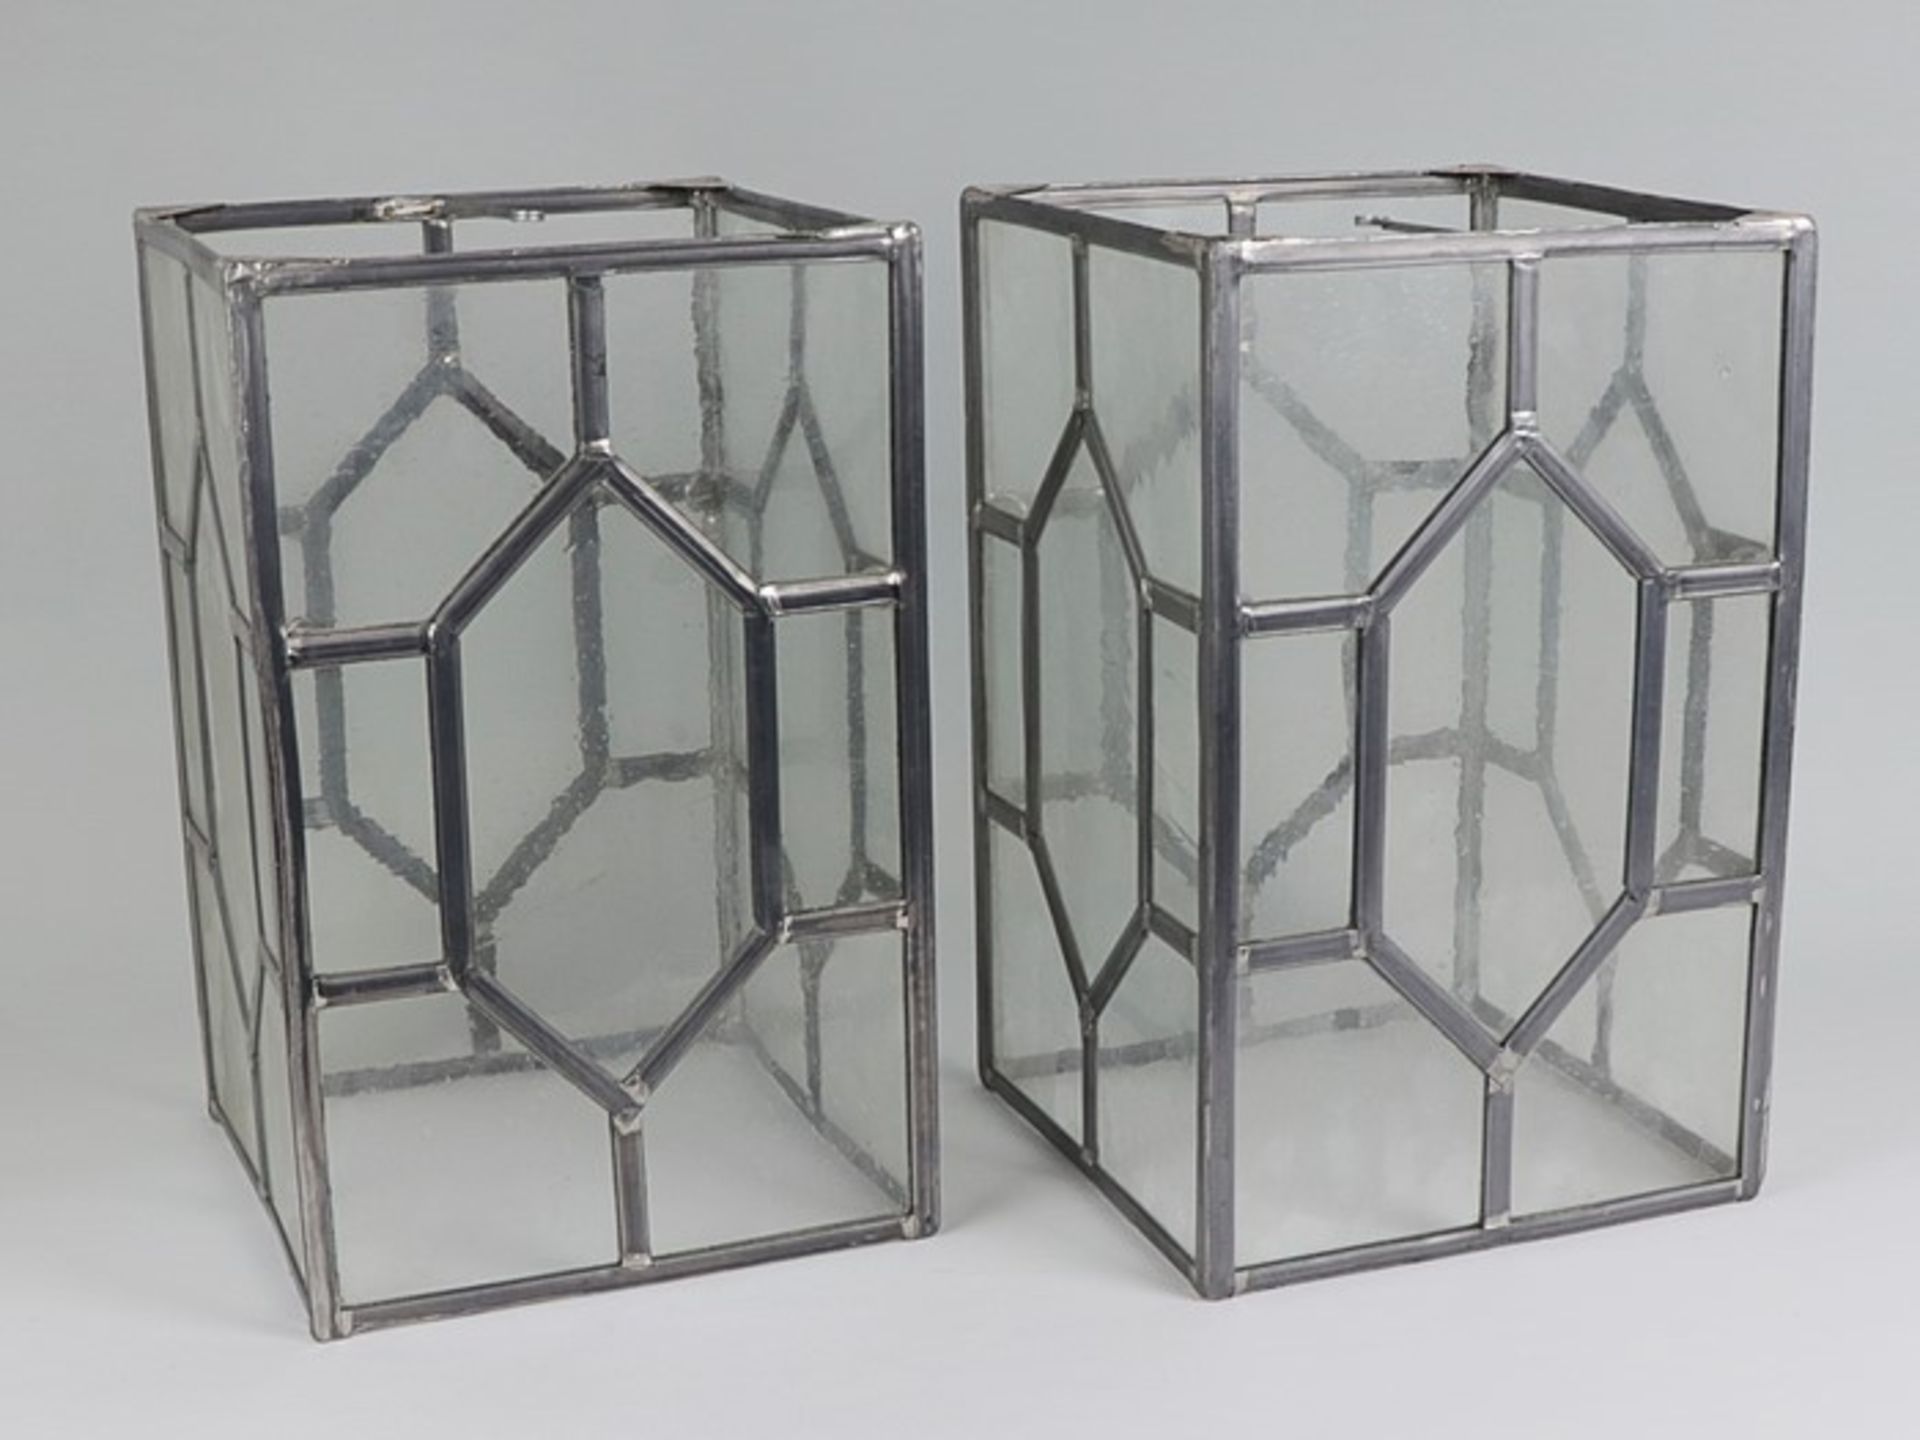 Deckenlaternen - PaarMetall/Glas, bleiverglaster Korpus, Blaseneinschlüsse, rechteckige Form,